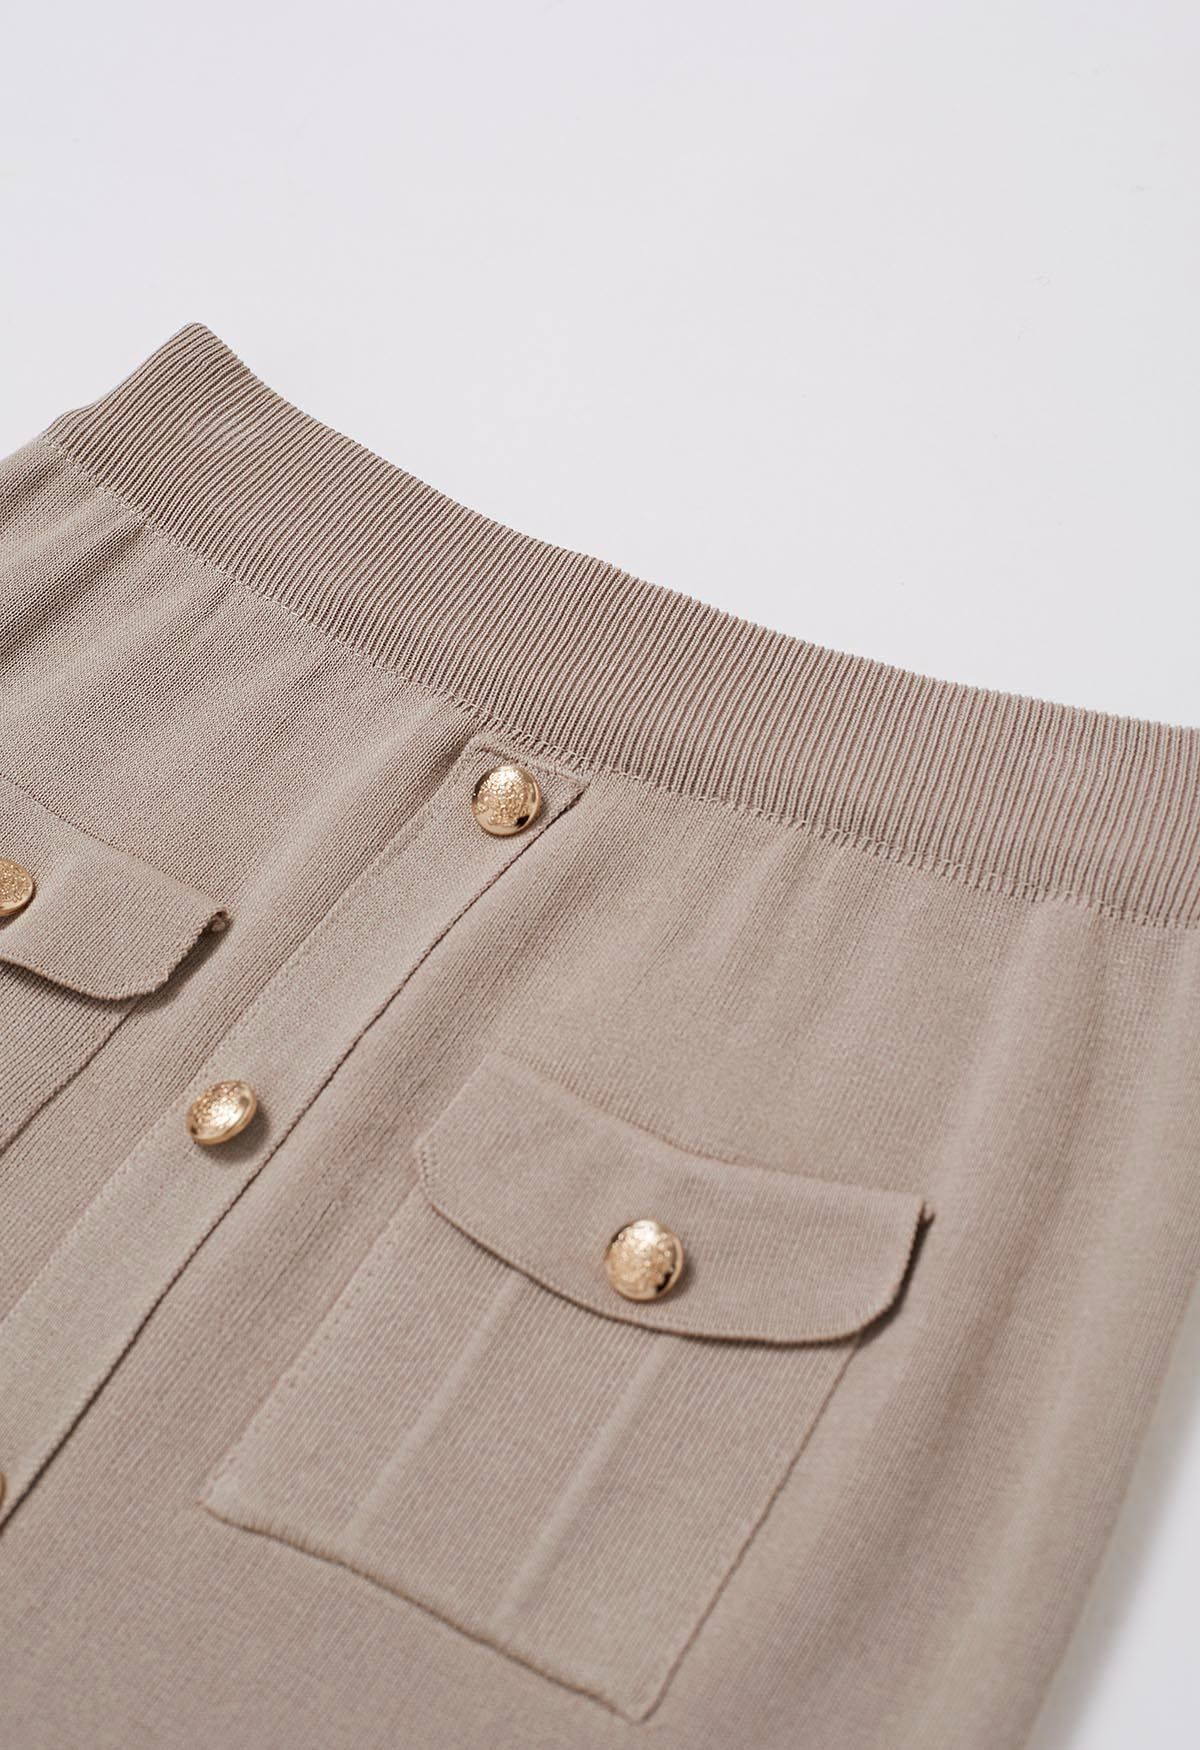 Conjunto de falda midi y top de punto con adornos de botones destacados en color topo